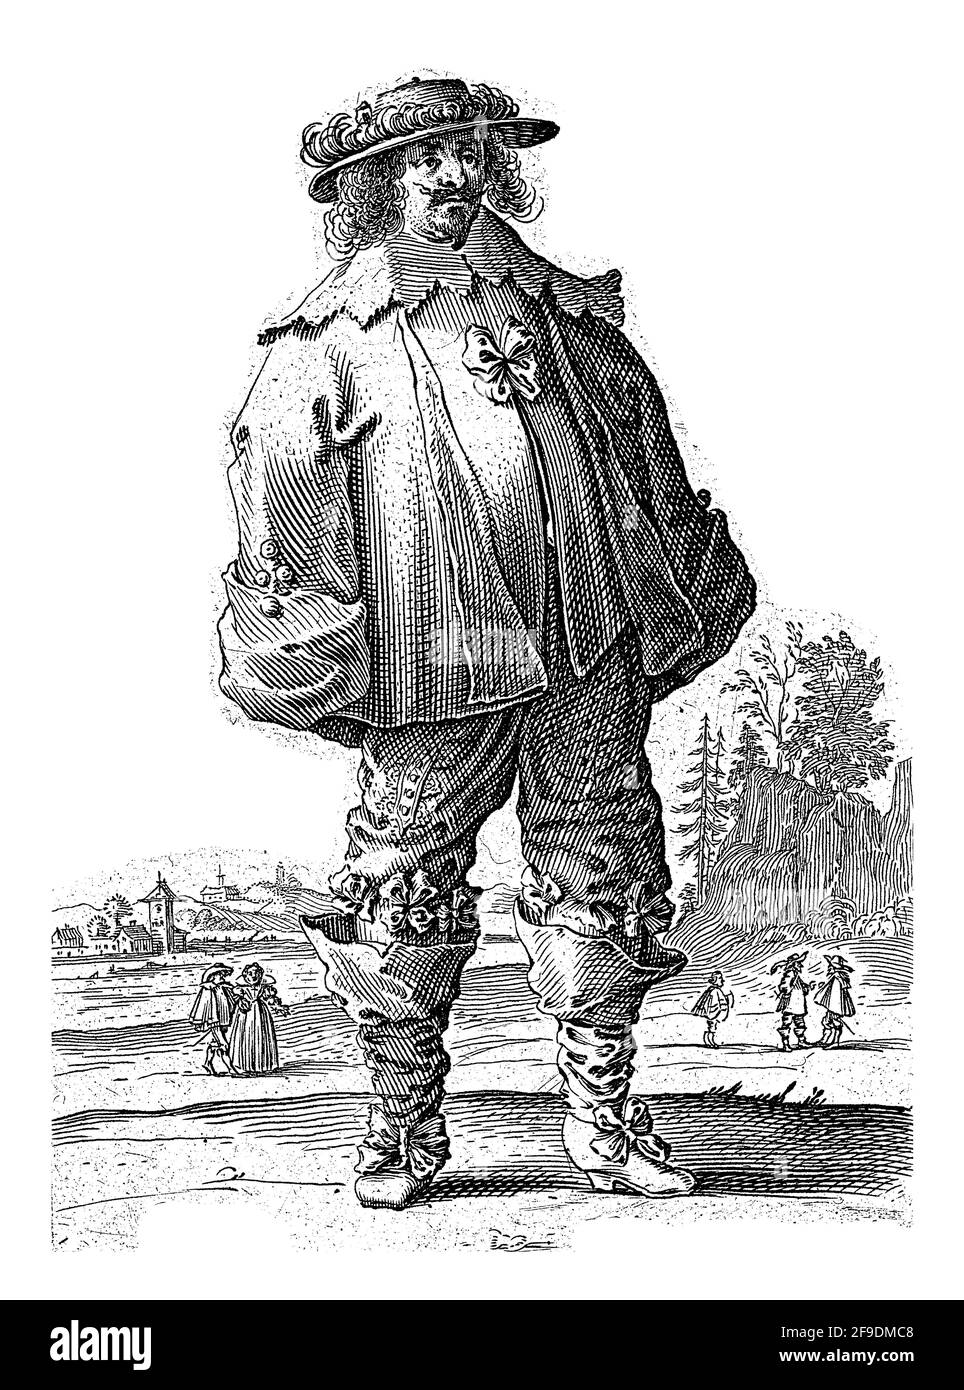 Homme debout dans un paysage, habillé selon la mode hollandaise vers 1625-35. En arrière-plan les contours d'un village et quelques figures. Banque D'Images